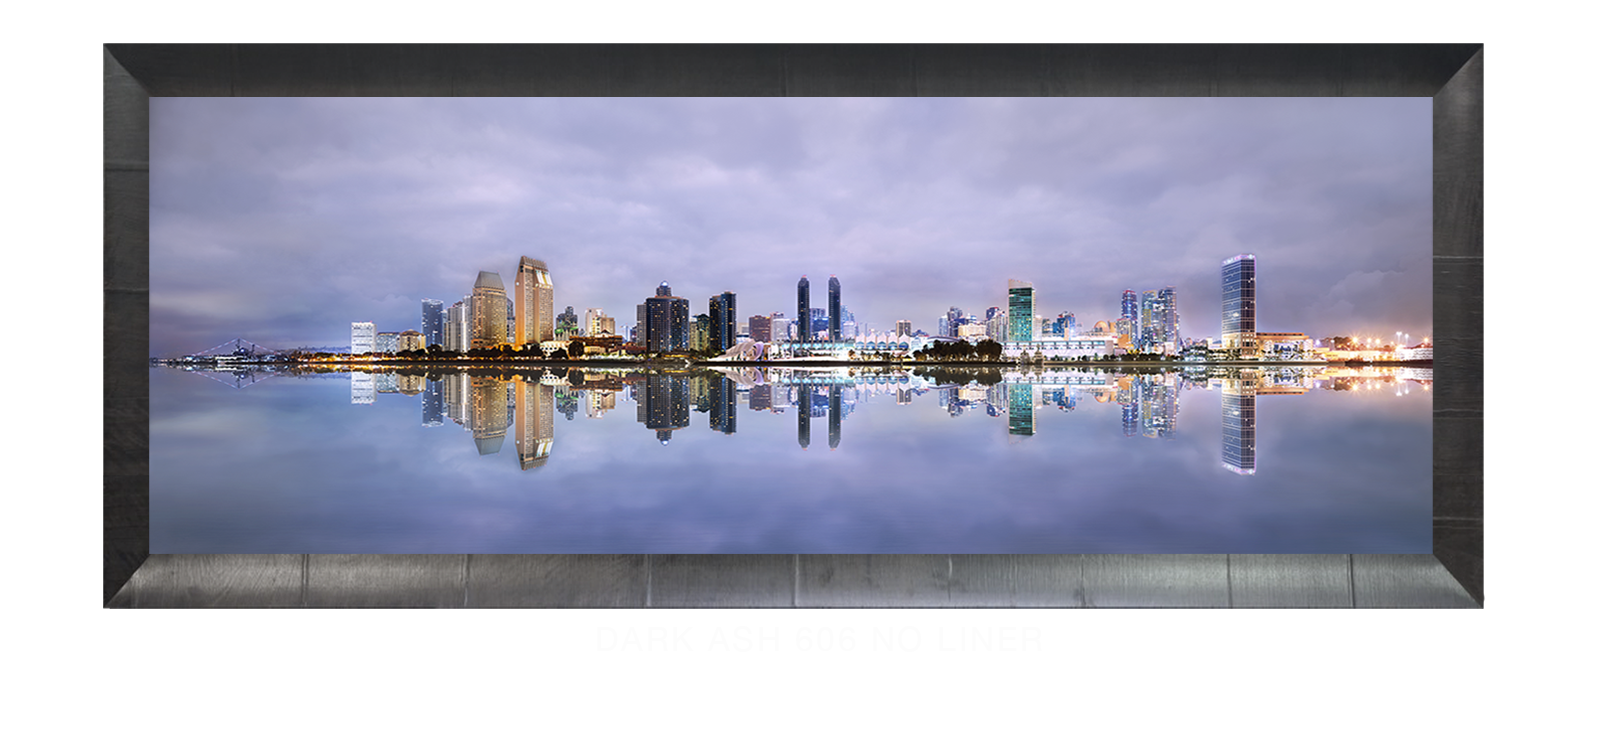 19INTERLUDE DIEGO Dark Ash 606 w_No Liner T